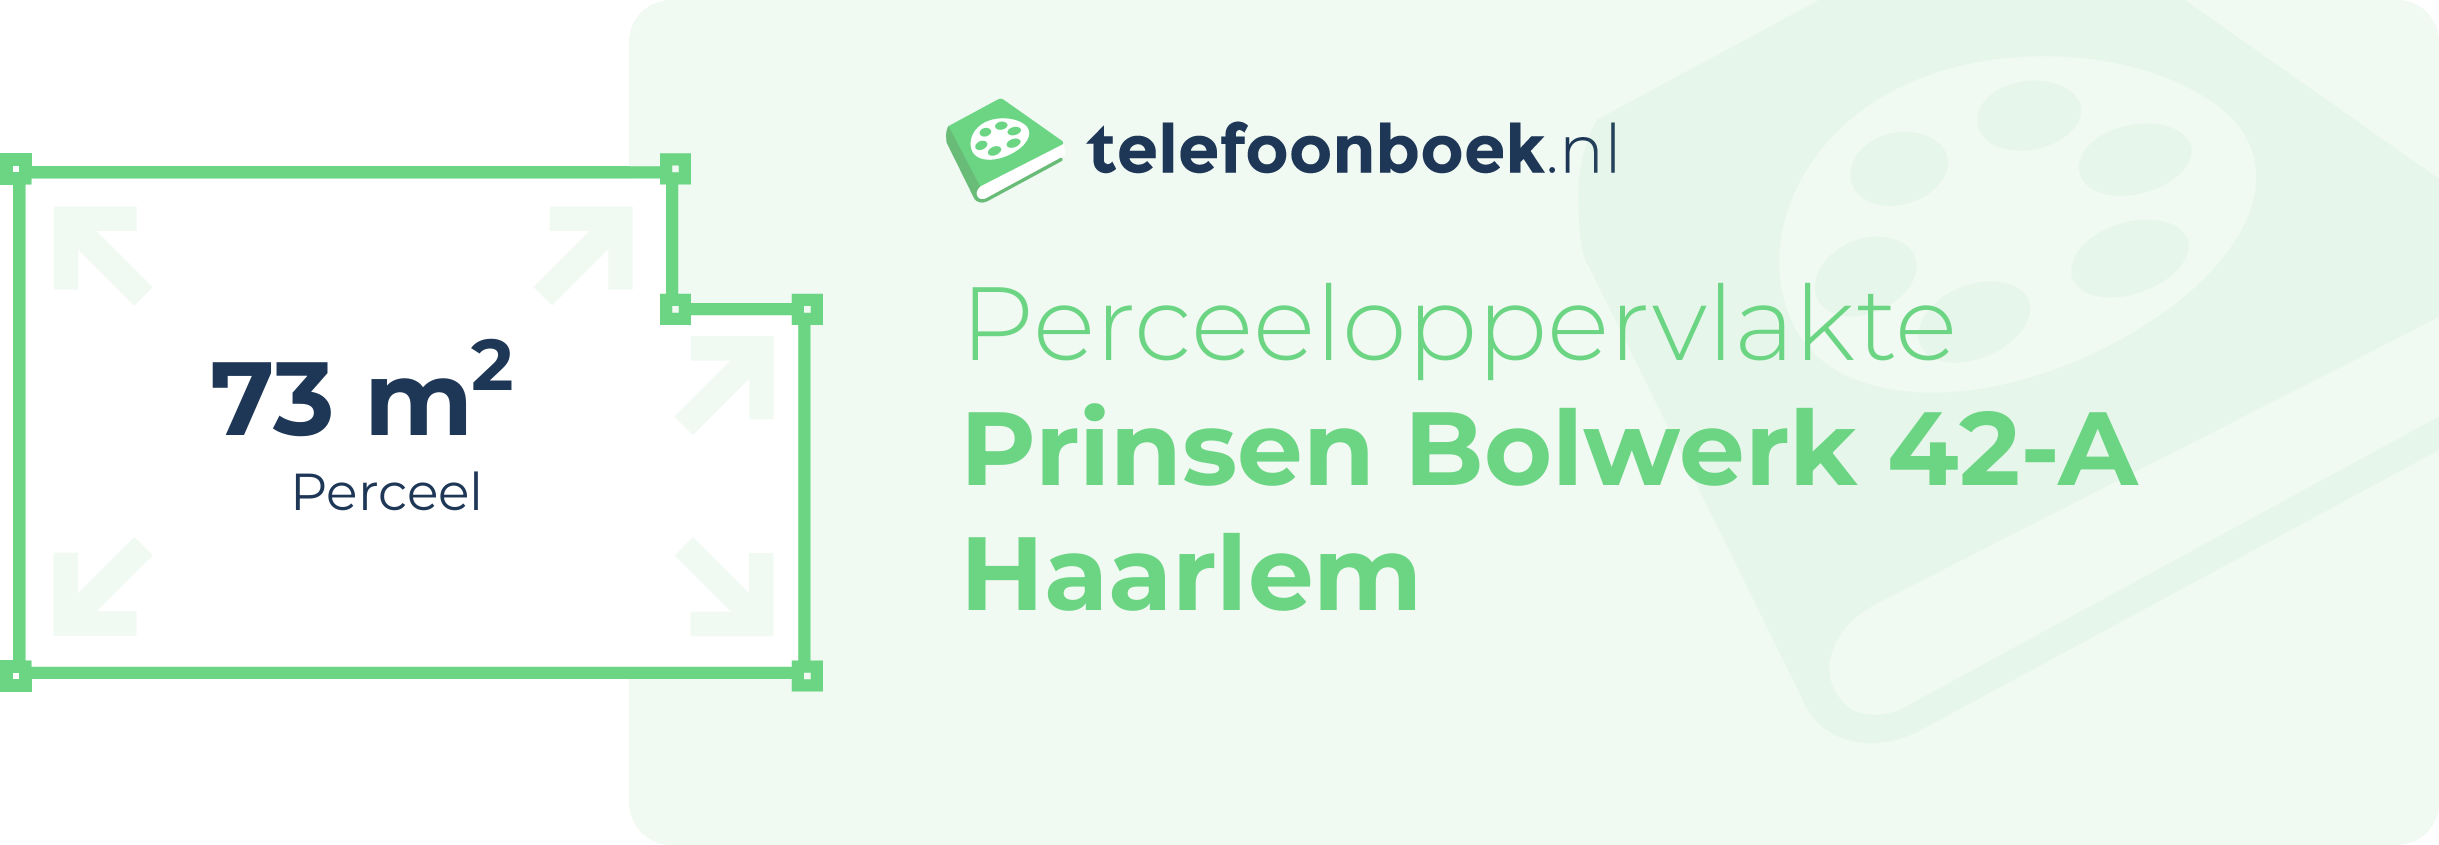 Perceeloppervlakte Prinsen Bolwerk 42-A Haarlem